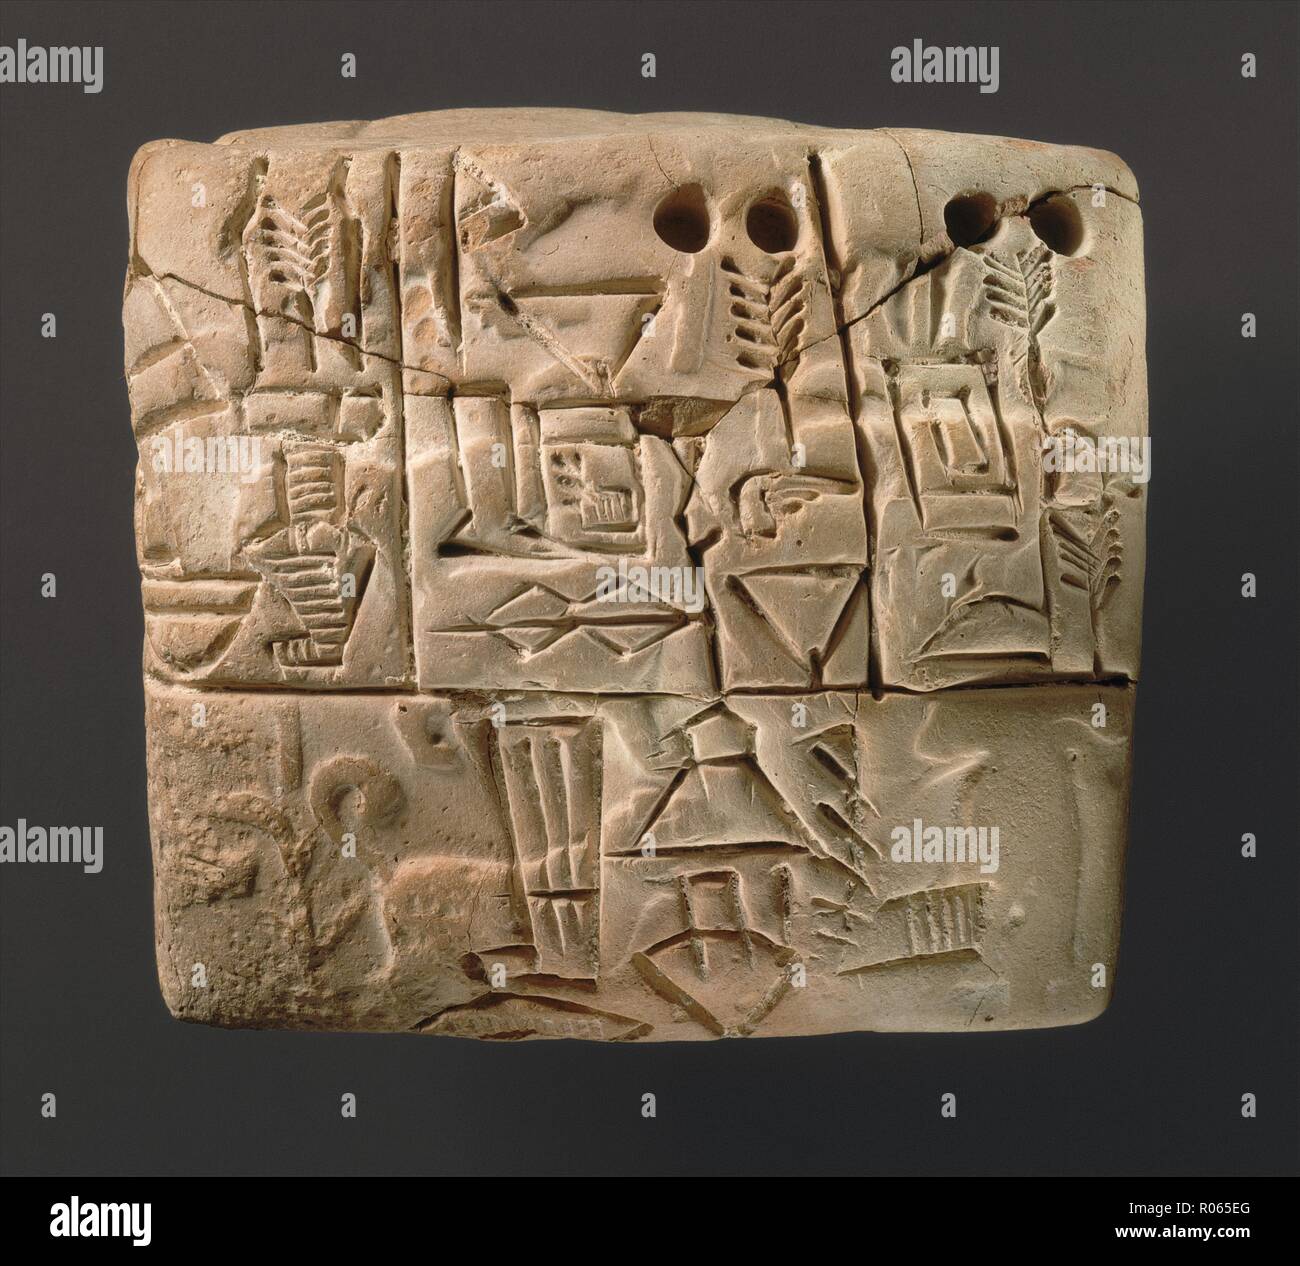 6369. Inizio tavoletta cuneiforme con impressione di scena di caccia, Uruk III style dating c. 3100-2900 A.C. Foto Stock